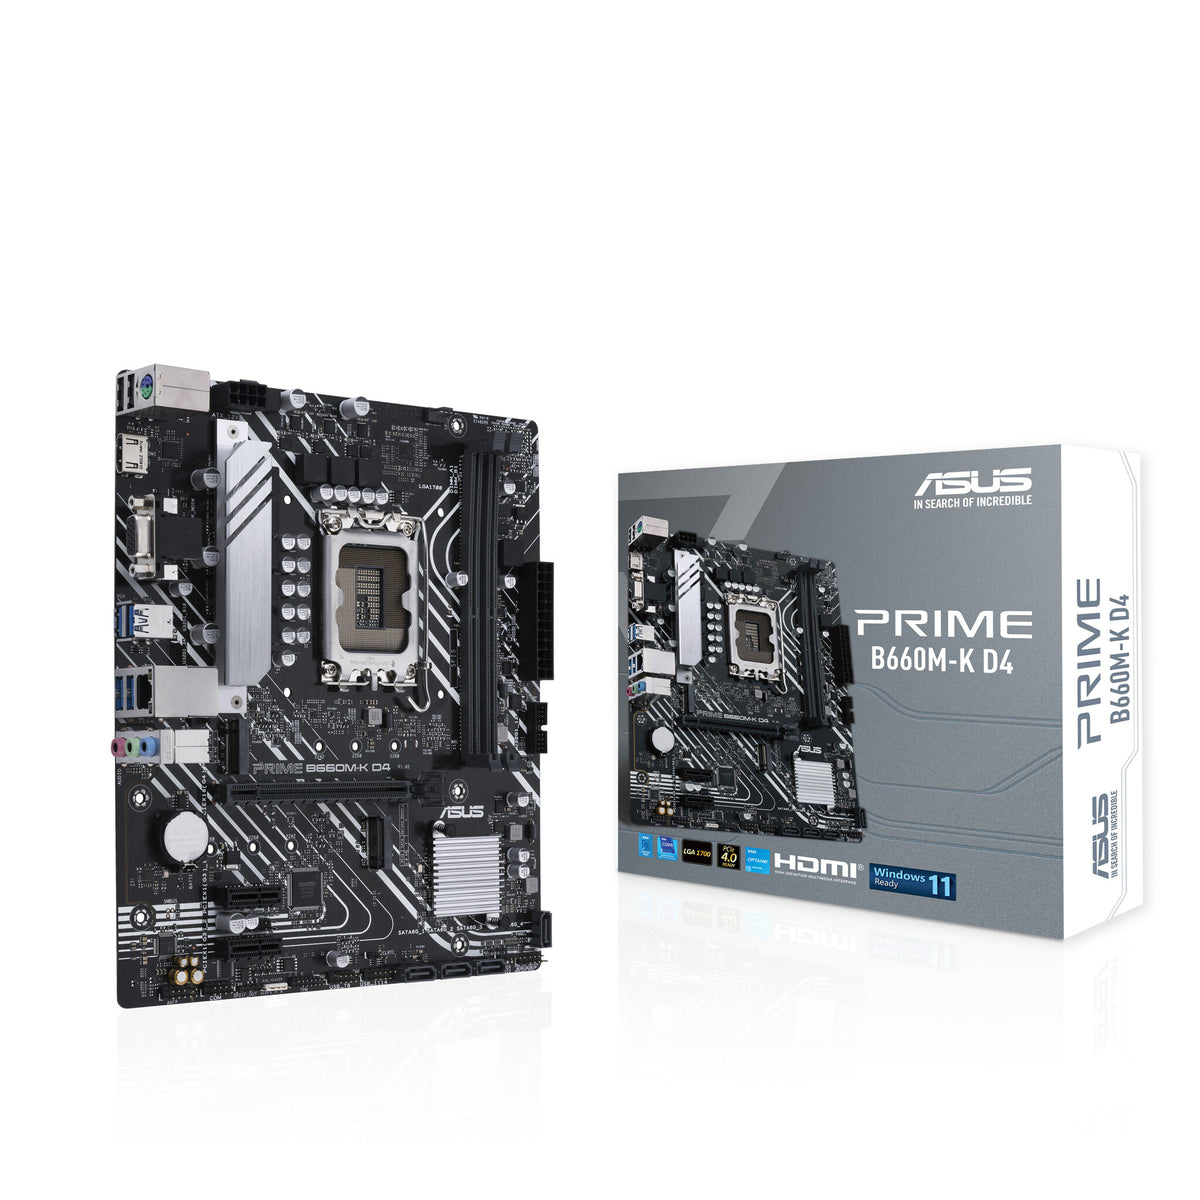 ASUS PRIME B660M-K D4 micro ATX motherboard - Intel B660 LGA 1700